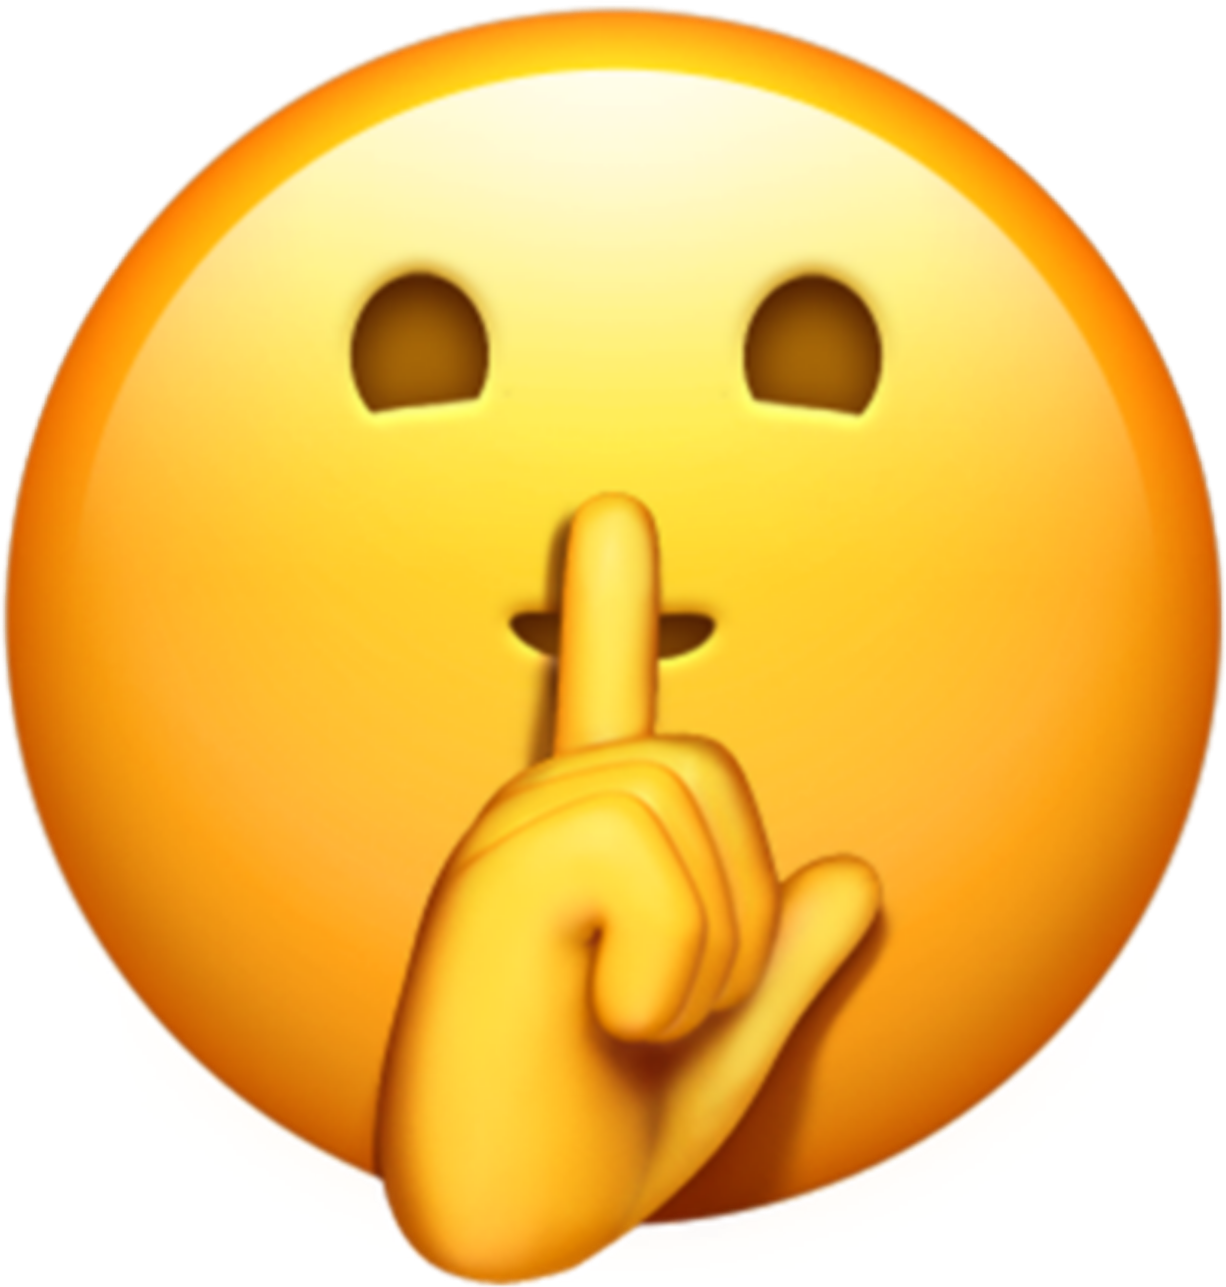 This visual is about emoji emojis shhh freetoedit #emoji #emojis #shhh.